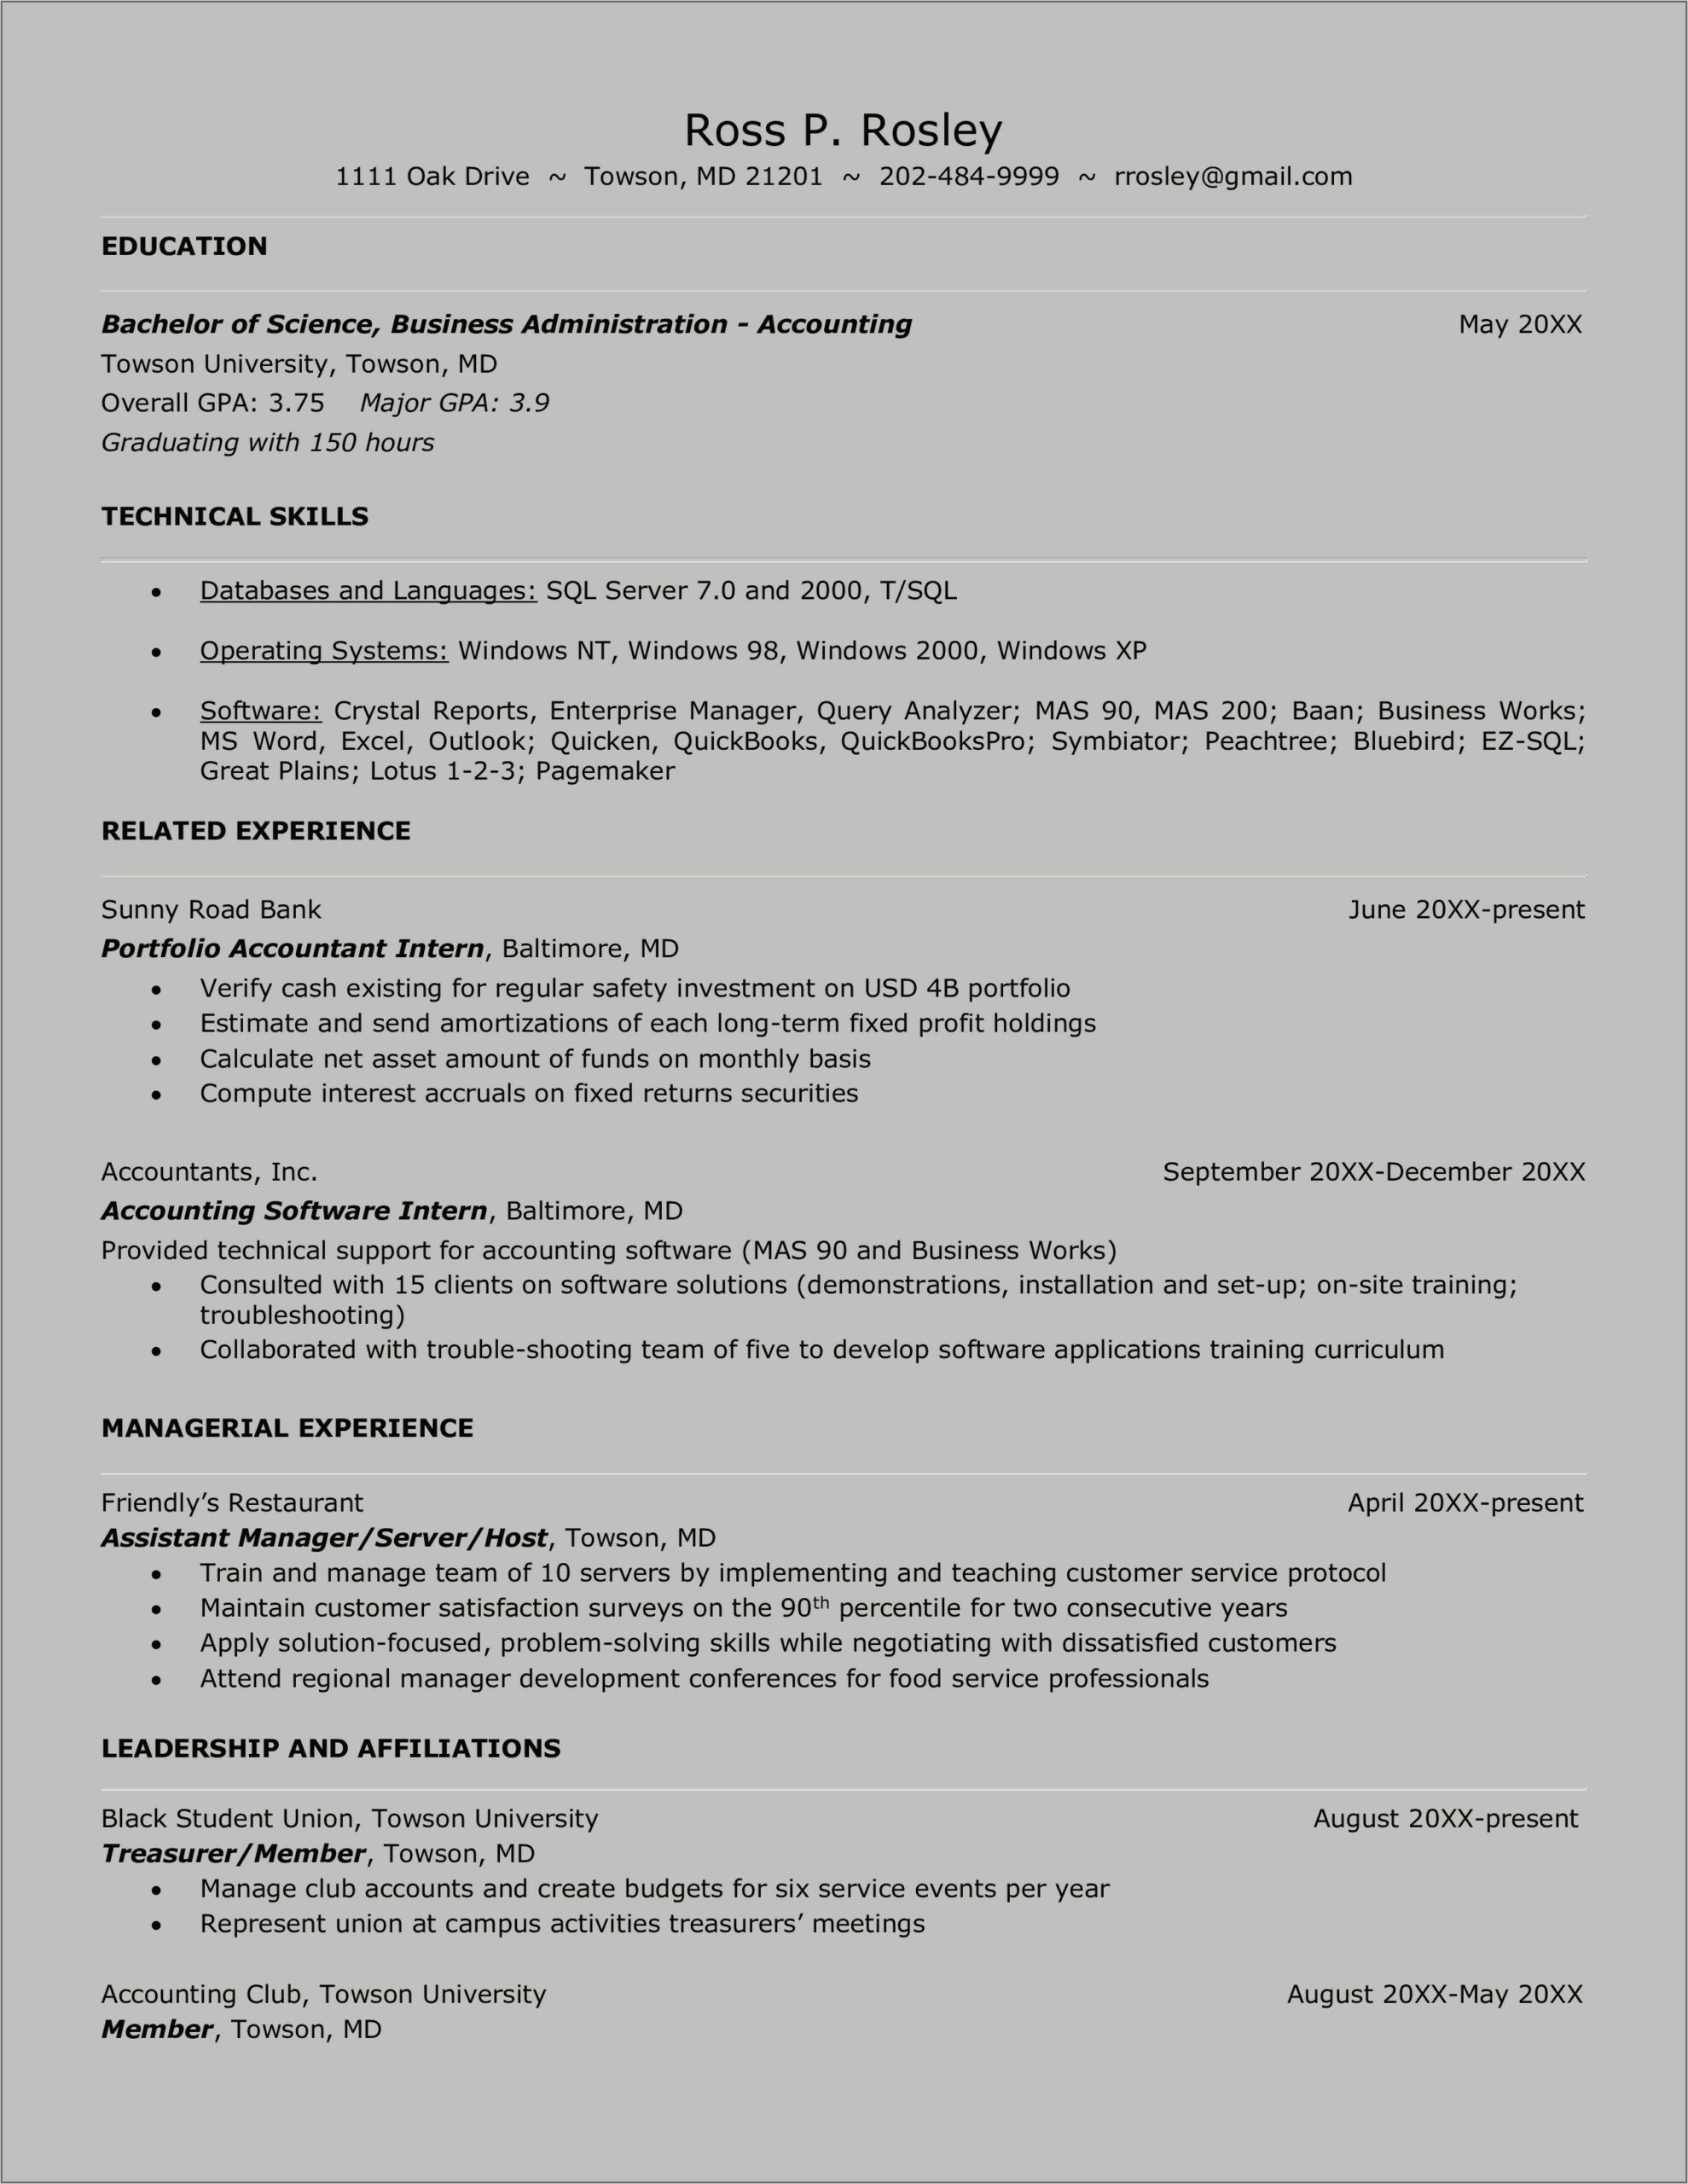 Applicant Resume Sample Filipino Download